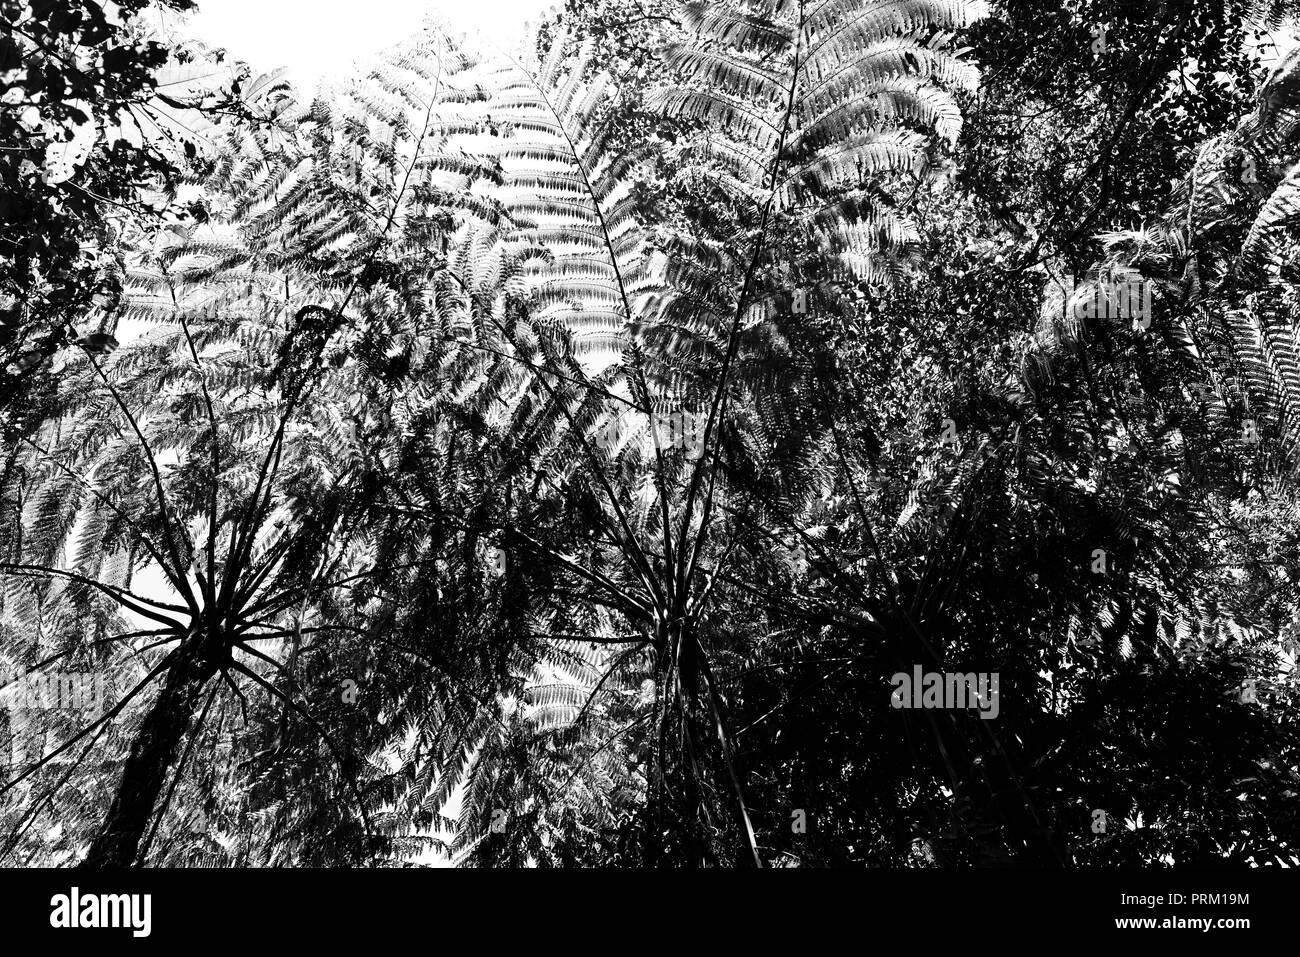 Auf der Suche nach oben in den Baumkronen mit Bäumen und Farnen, Misty Titel Berge Wüste, Palmerston Doongan Wooroonooran National Park, Queensland Stockfoto